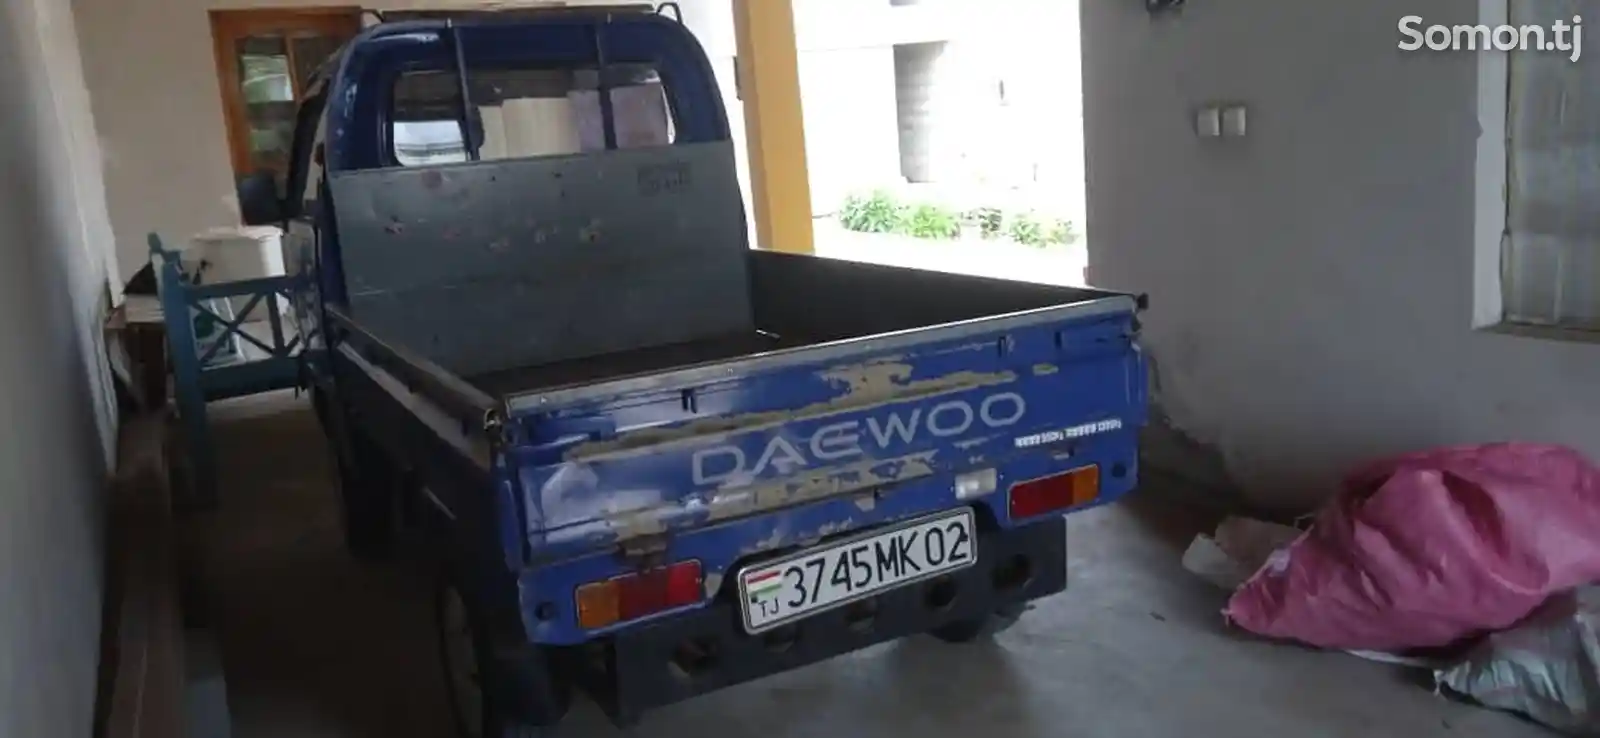 Бортовой автомобиль Daewoo Labo-4